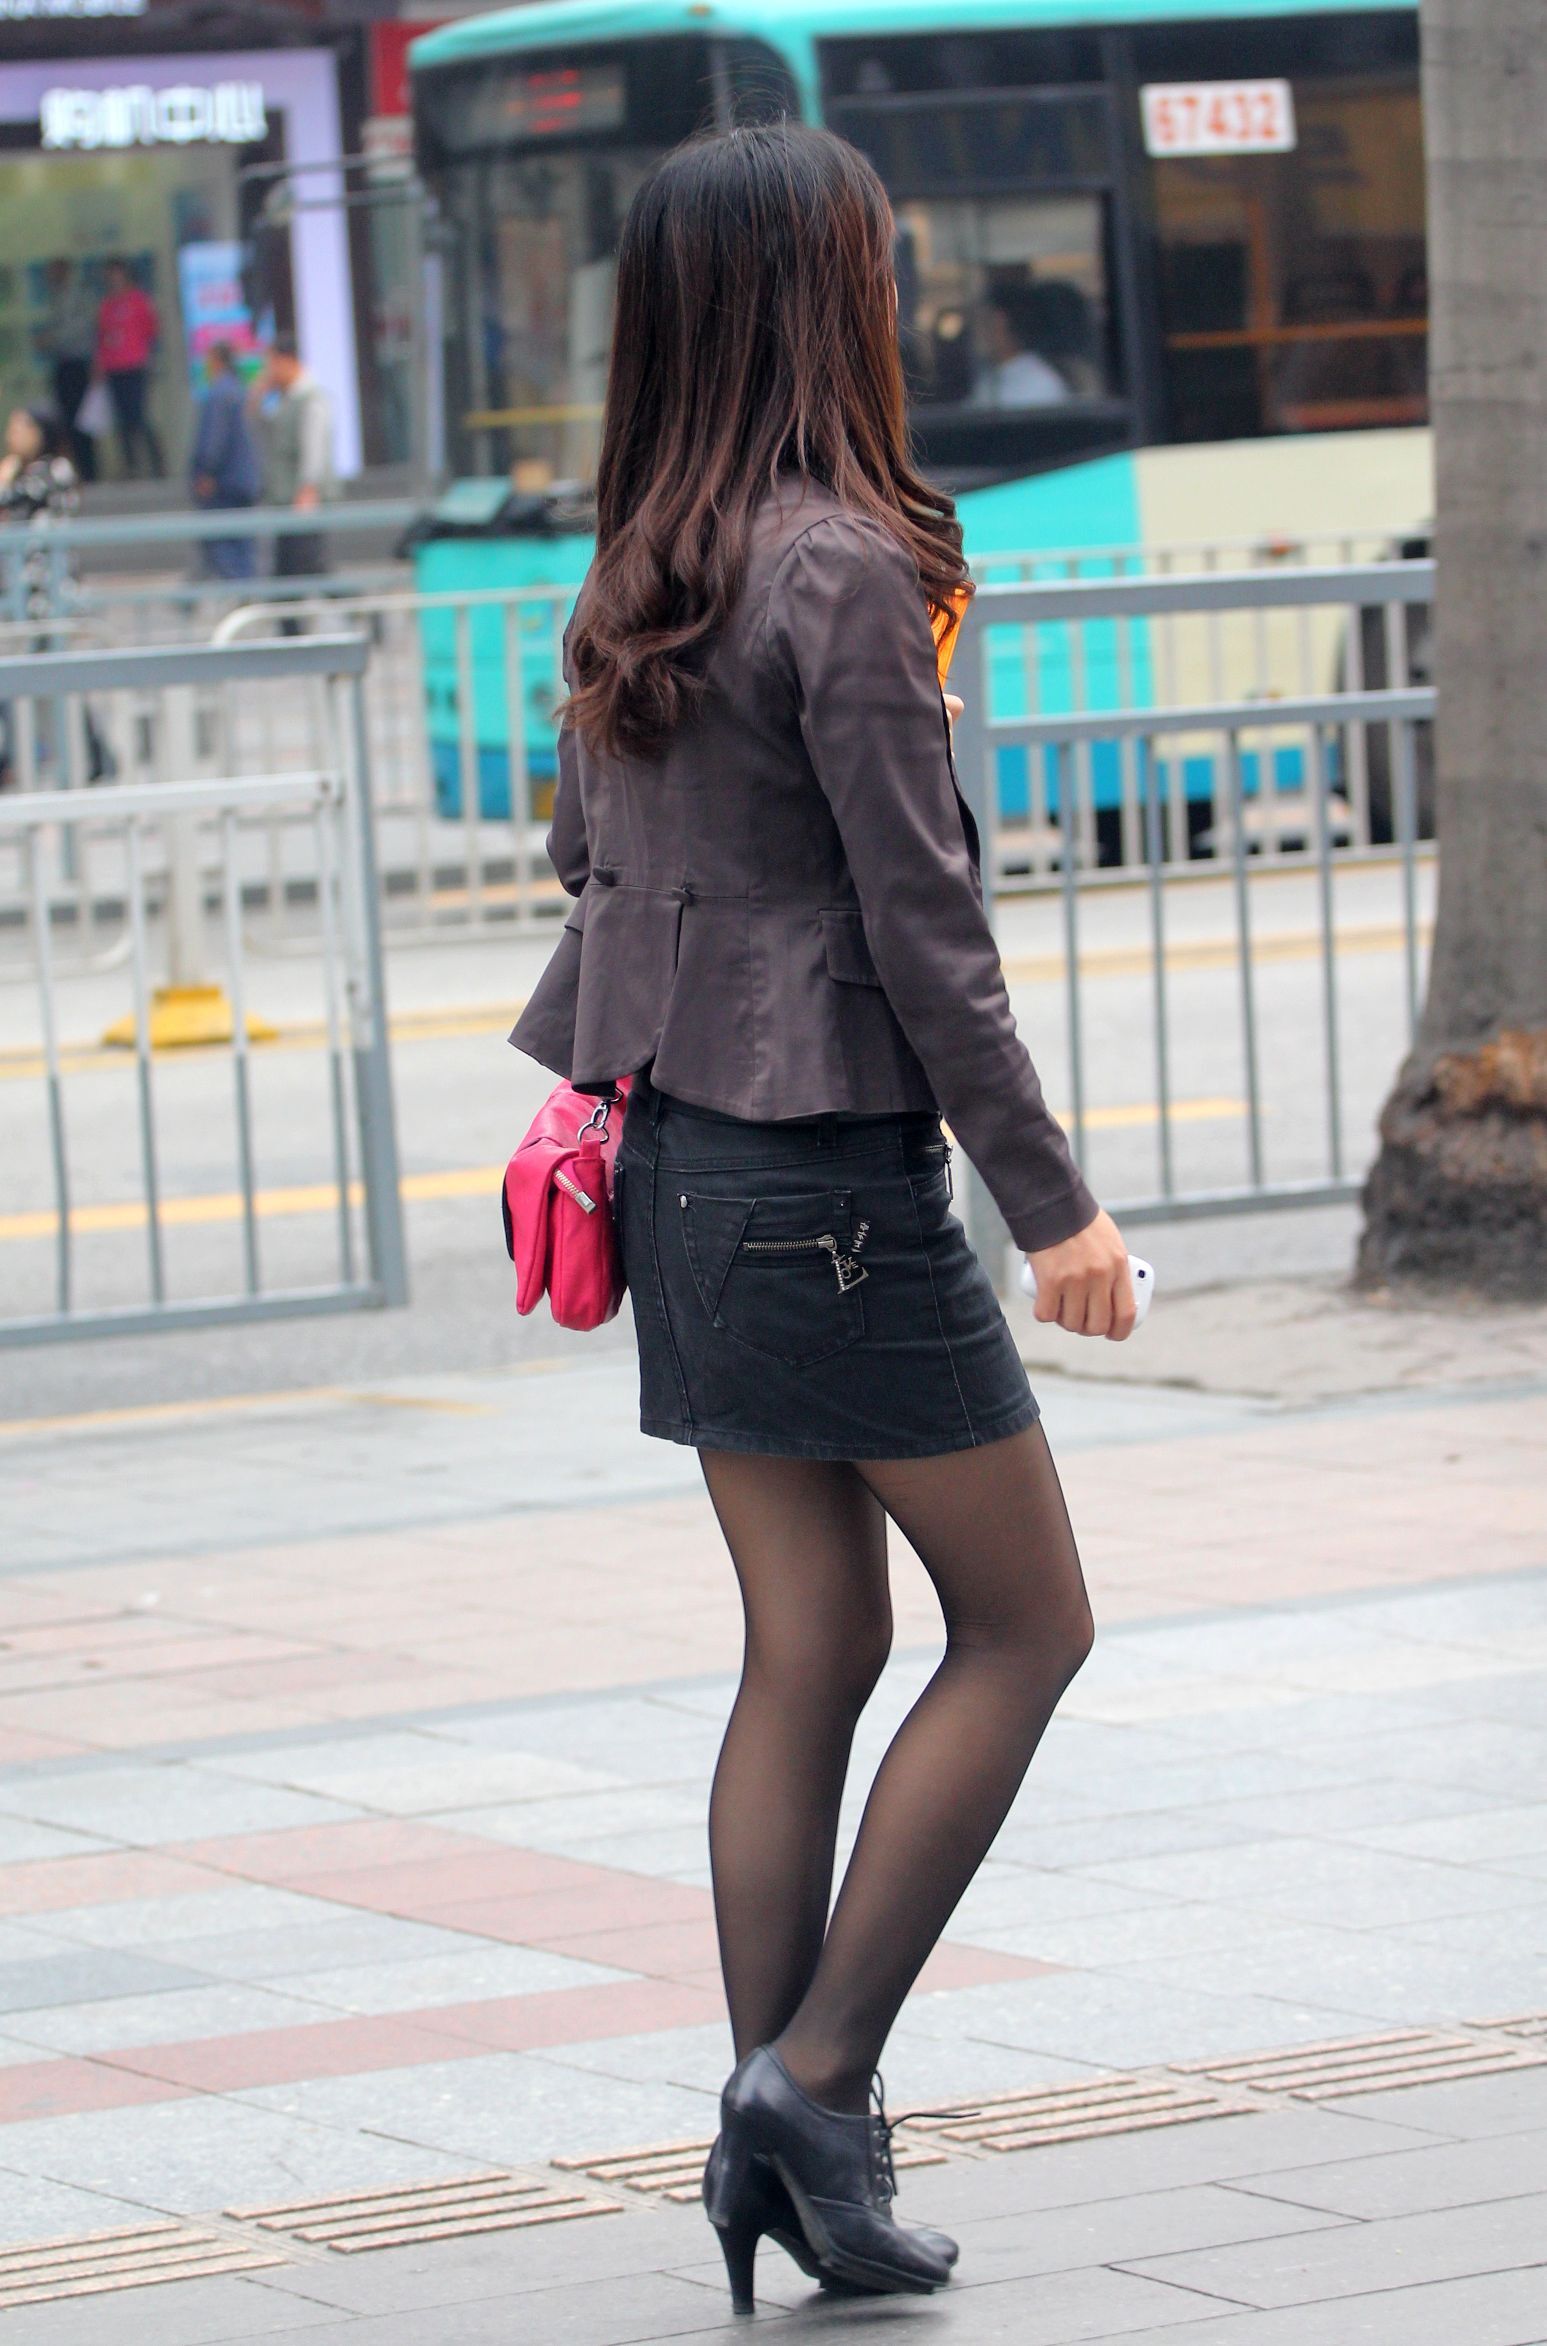 [户外街拍] 2013.12.01 短裙黑丝高跟的熟妇